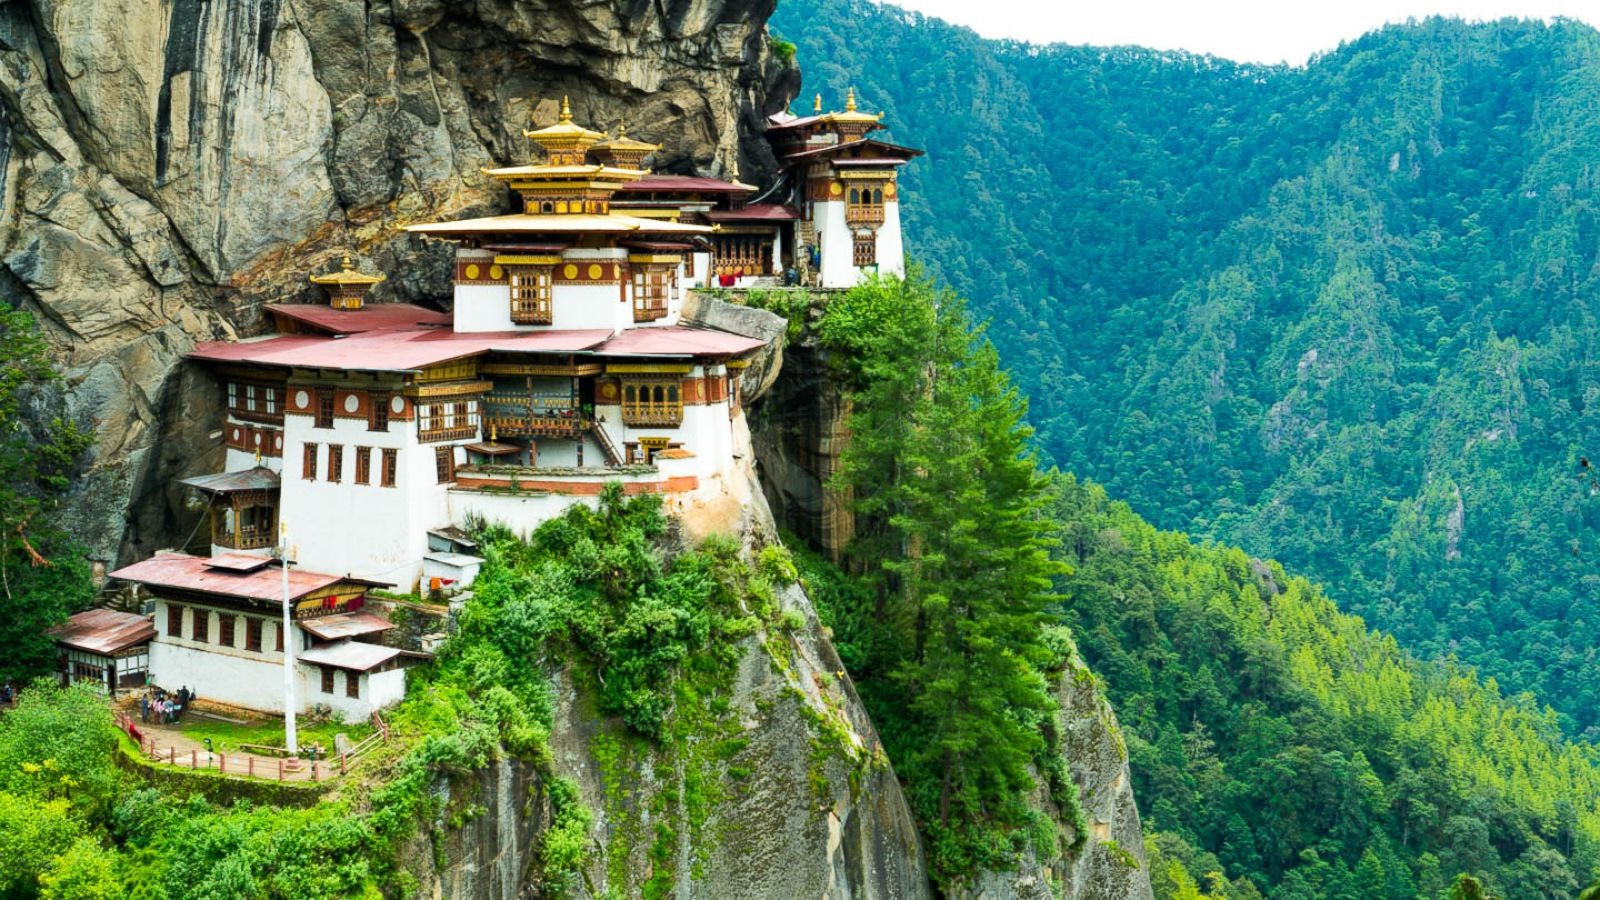 Bhutan gây ấn tượng với những ngồi nhà cheo leo trên vách núi đá dốc đứng và cả màu xanh ngát của rừng rậm. Ảnh: Ảnh: Abcnews